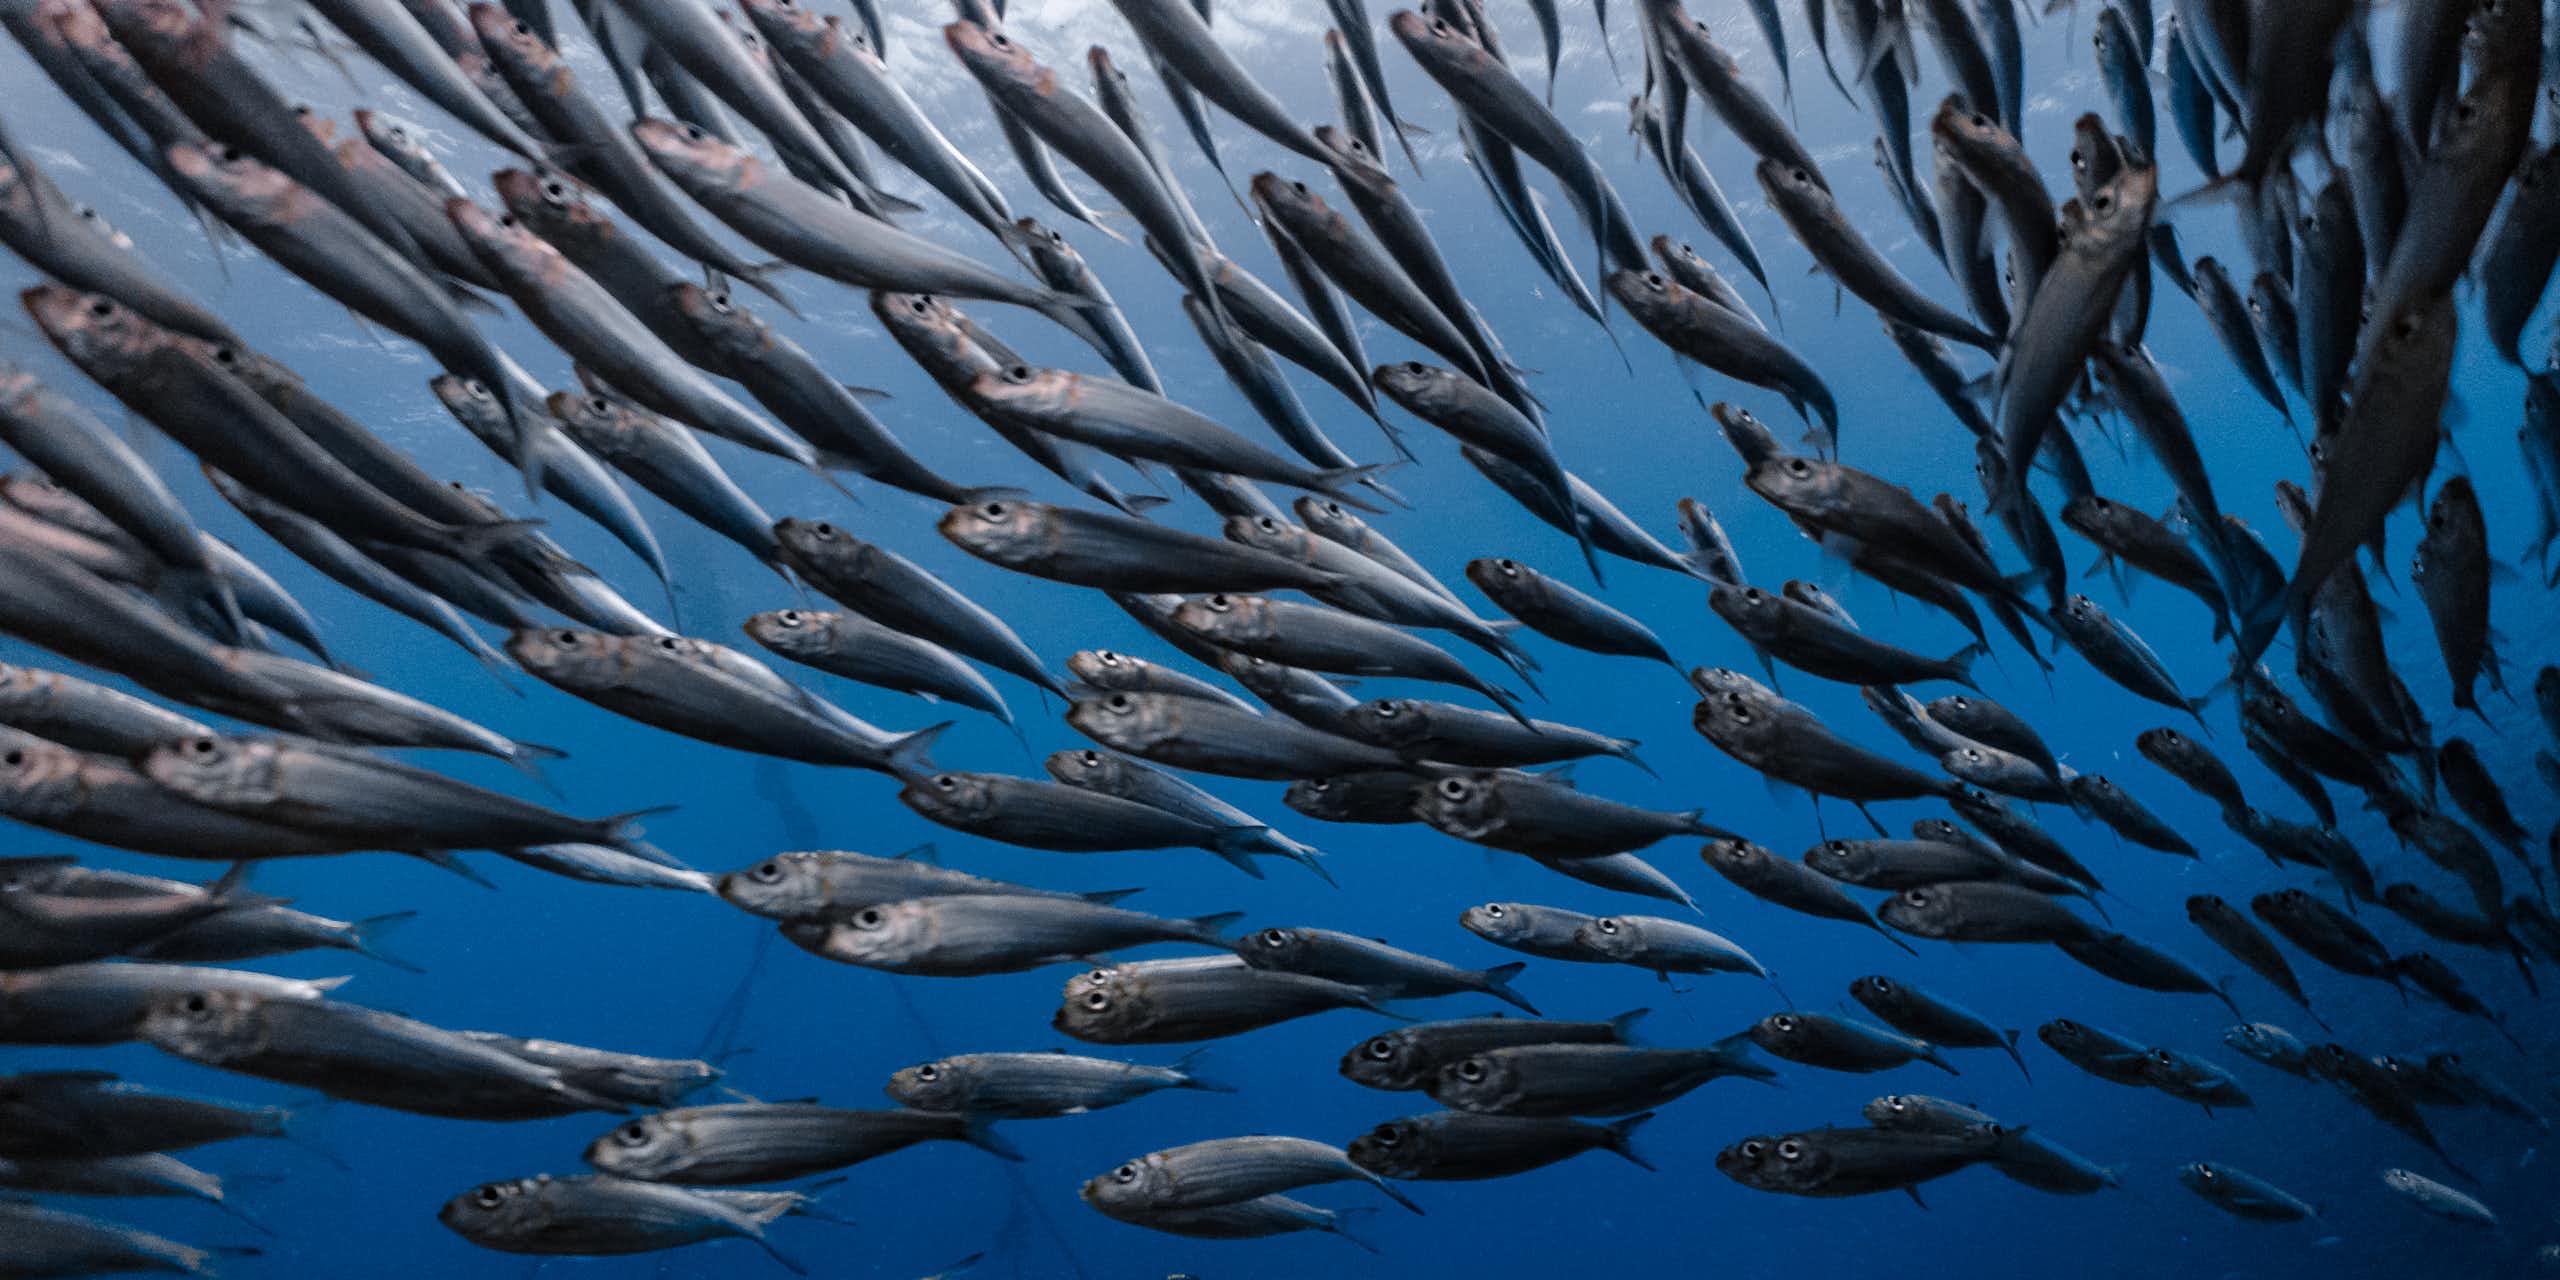 Les changements climatiques et la surpêche font augmenter le niveau de mercure dans le poisson